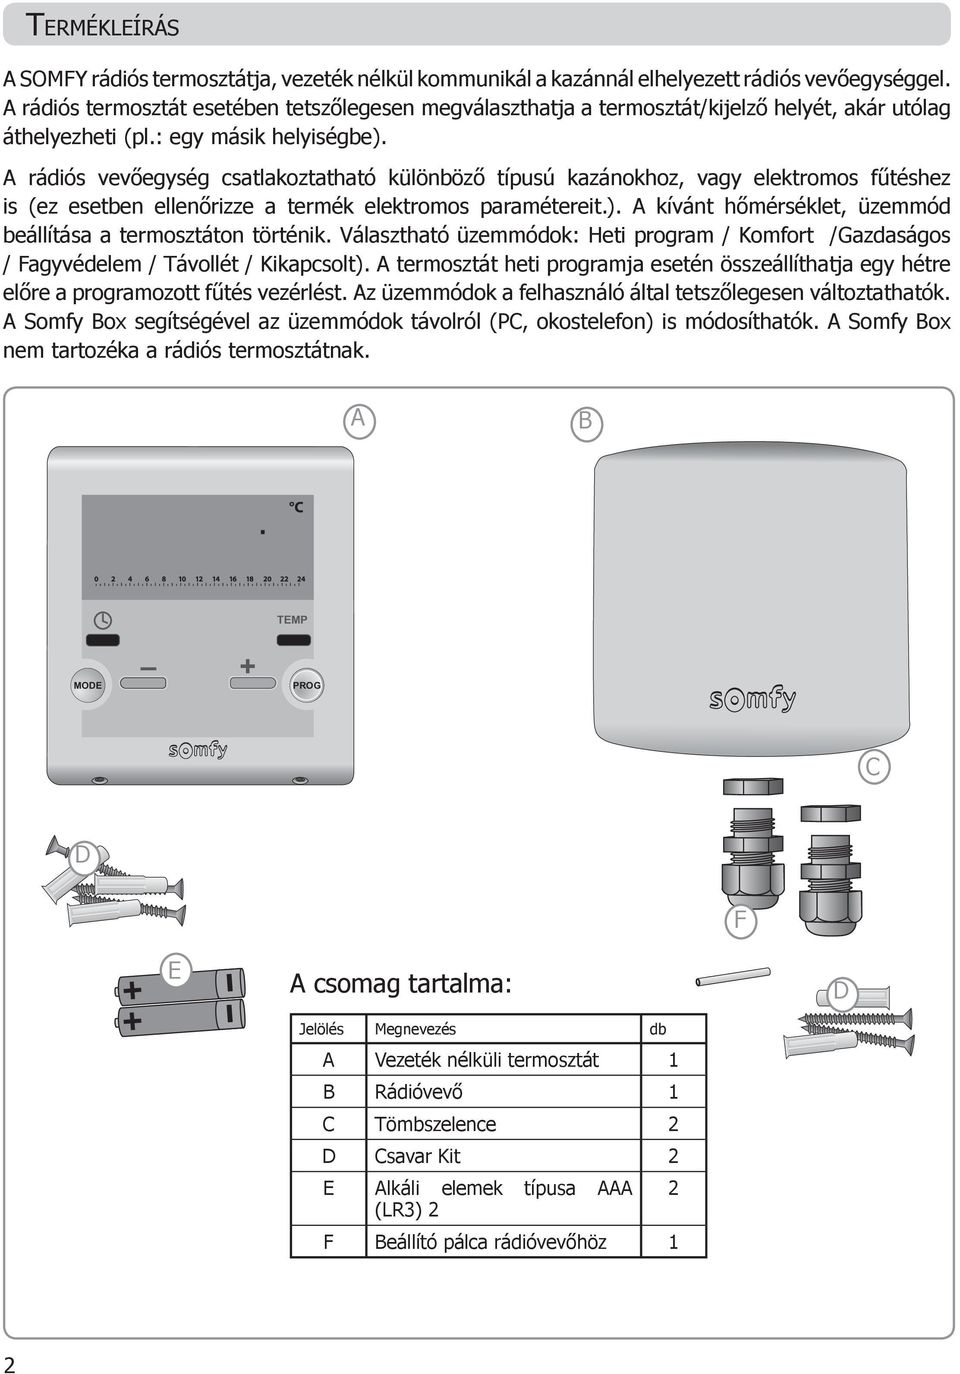 A rádiós vevőegység csatlakoztatható különböző típusú kazánokhoz, vagy elektromos fűtéshez is (ez esetben ellenőrizze a termék elektromos paramétereit.).